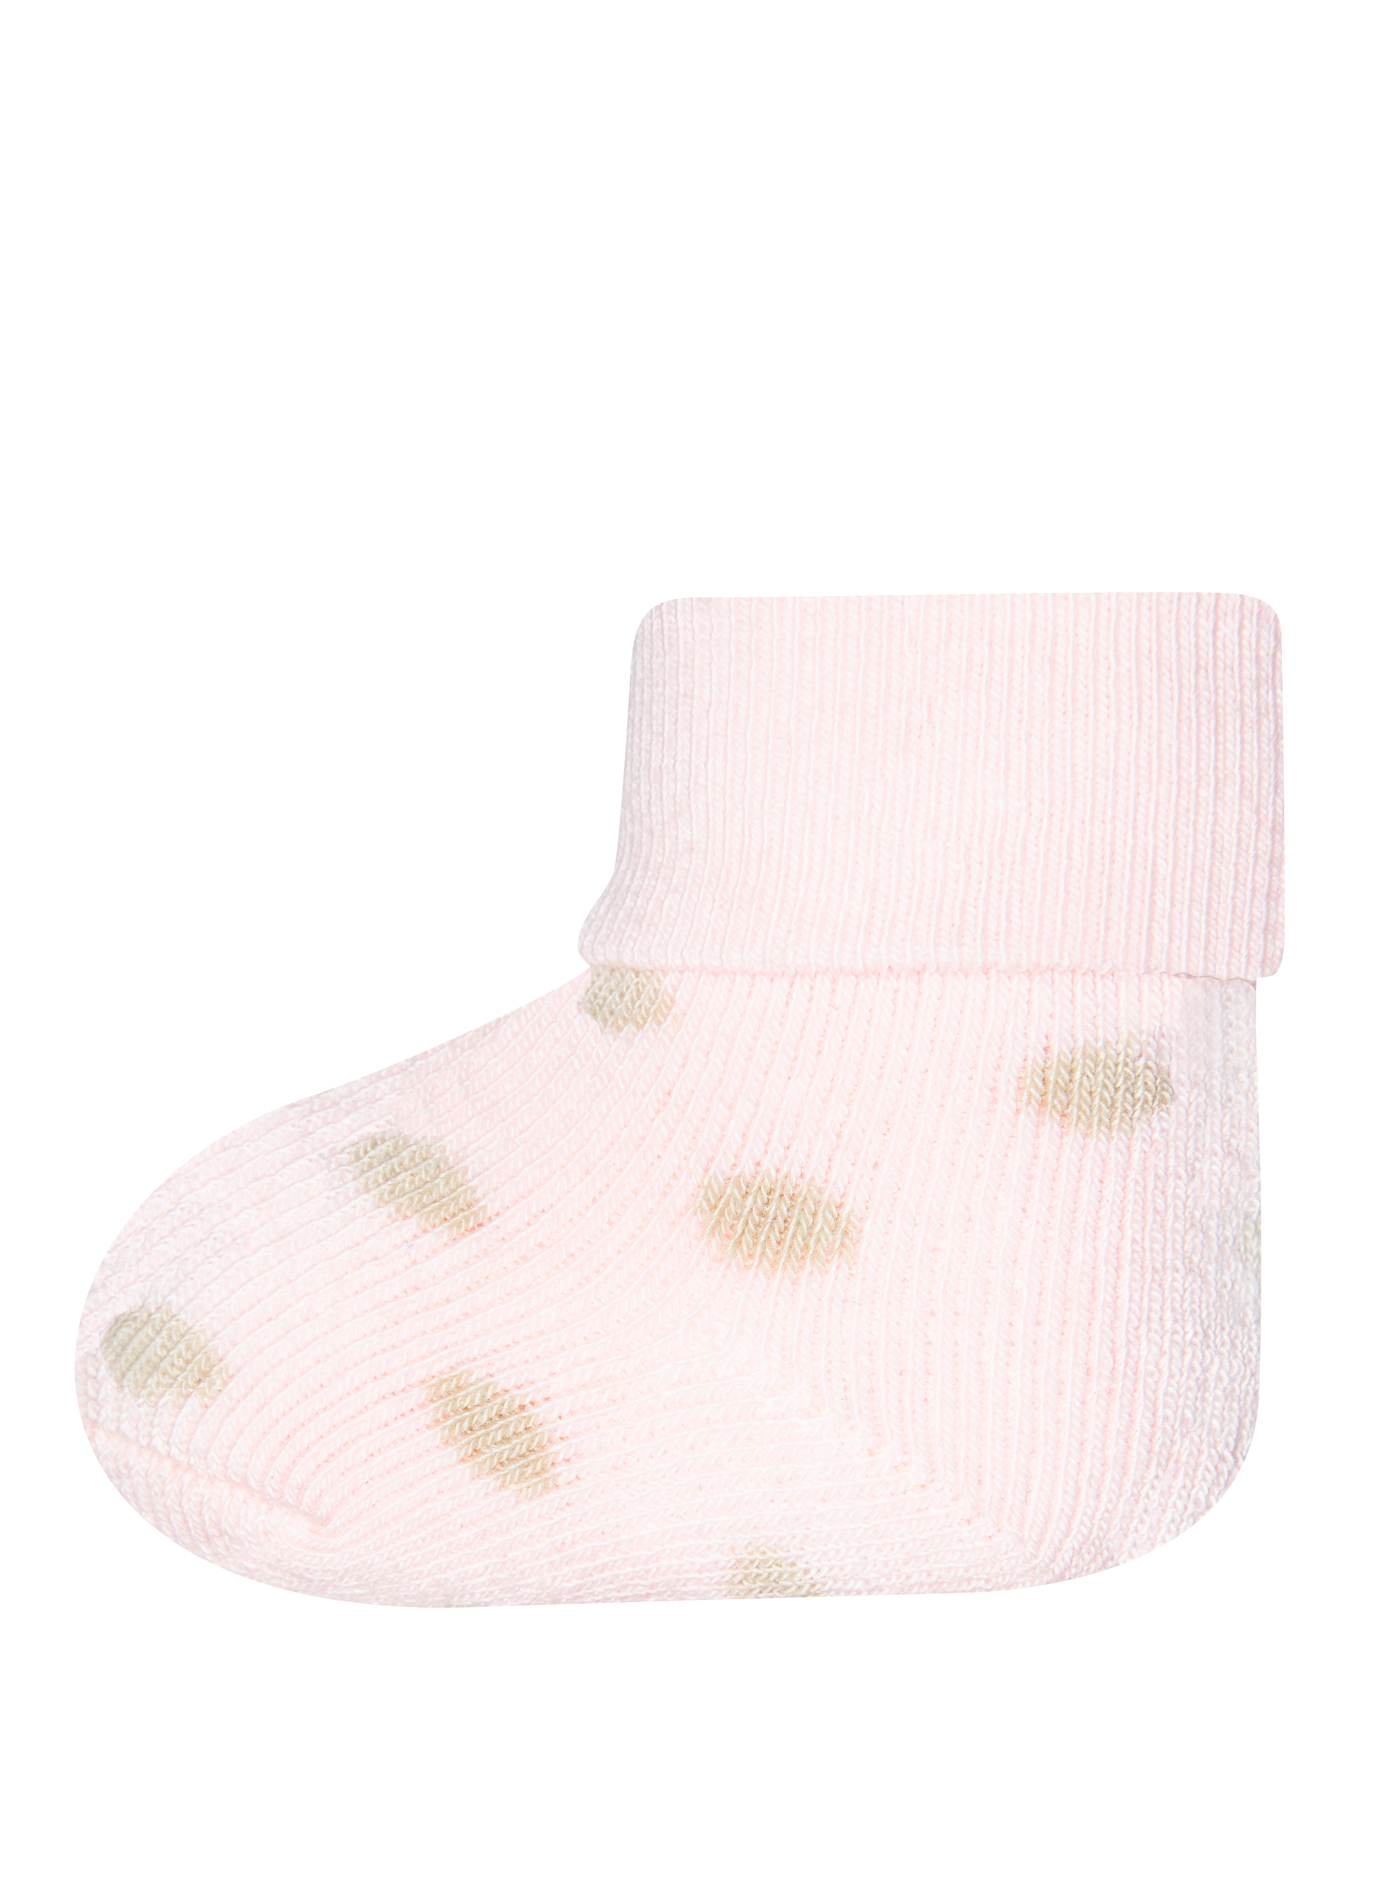 Mädchen Erstlings-Socken (Dreierpack) Dots und Weiß